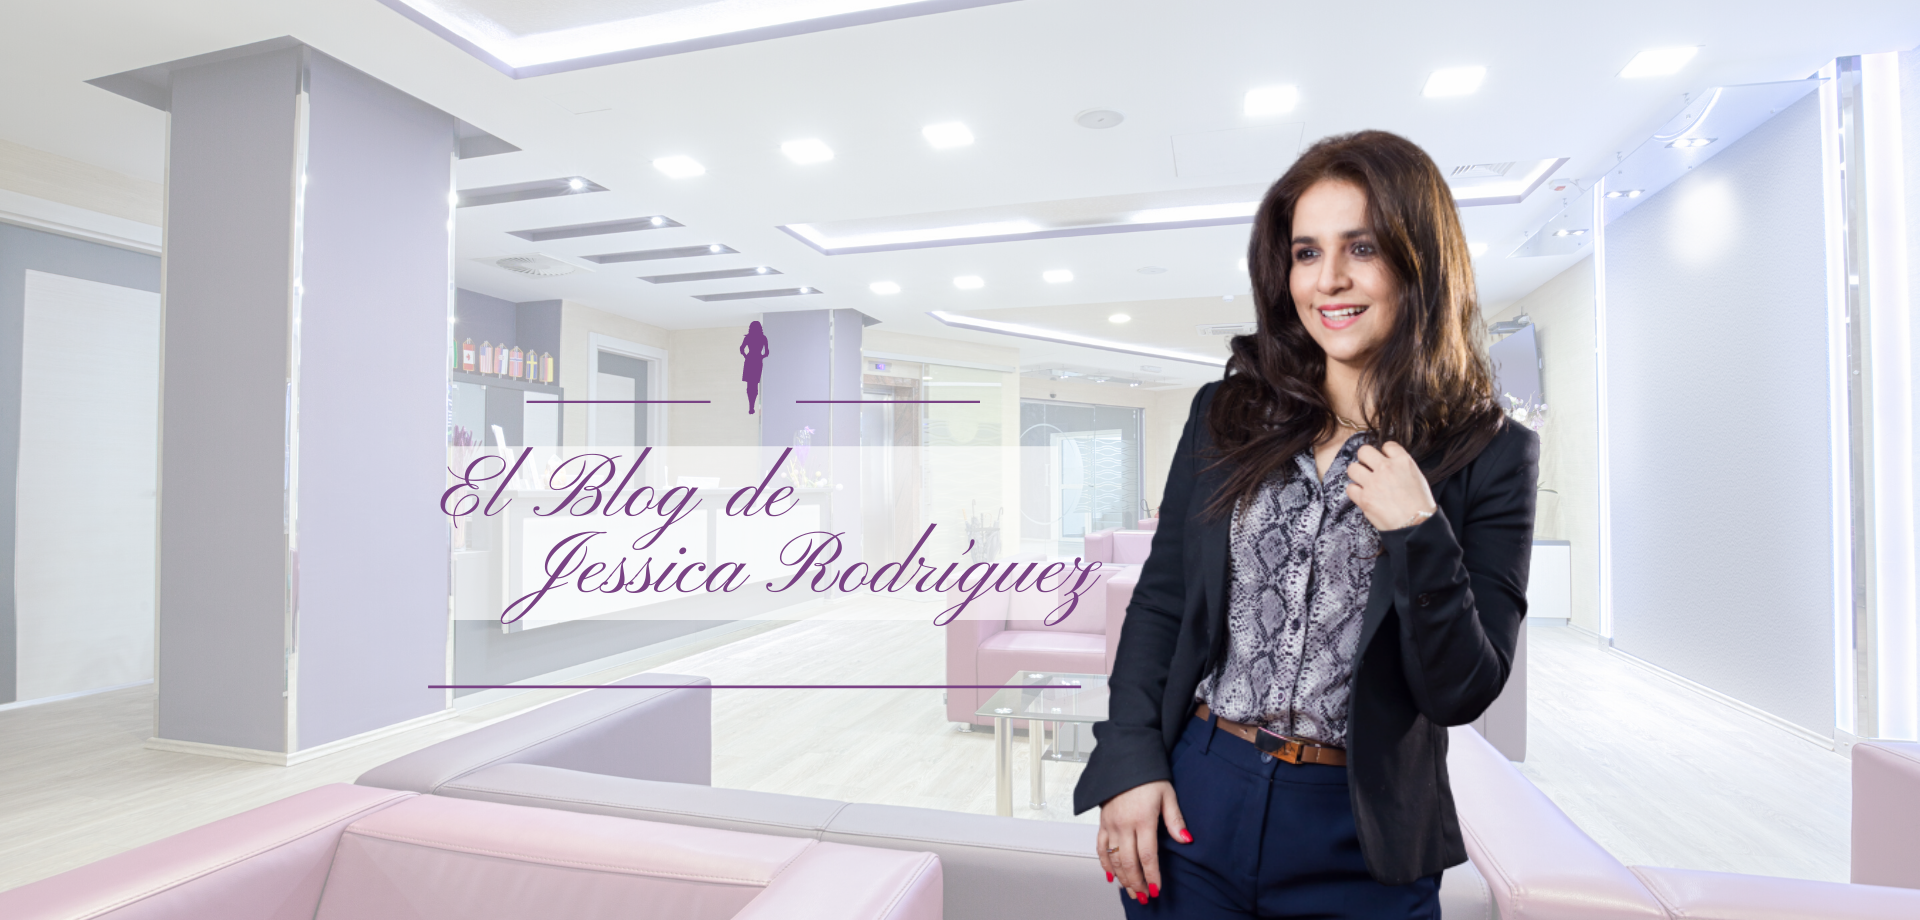 El Blog de Jessica Rodríguez marca personal